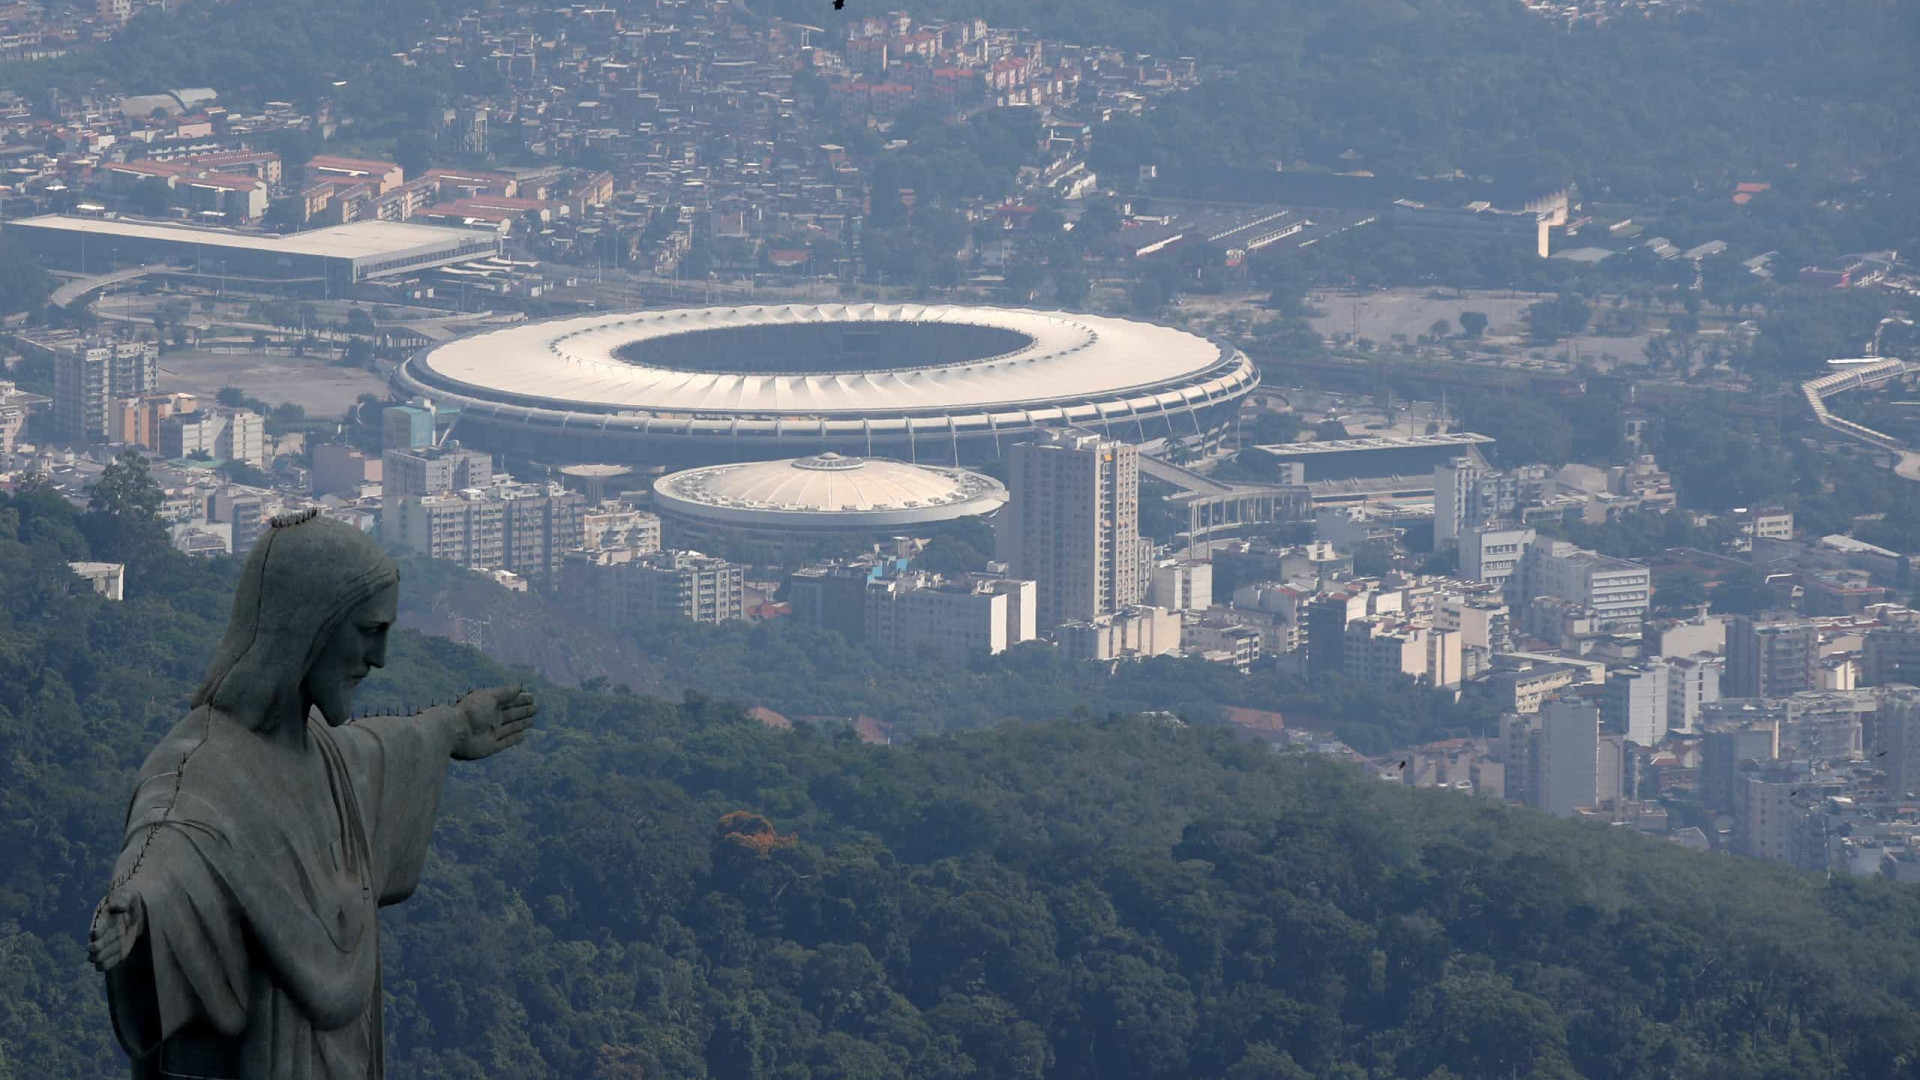 Maracanã: as boas e más lembranças do futebol brasileiro